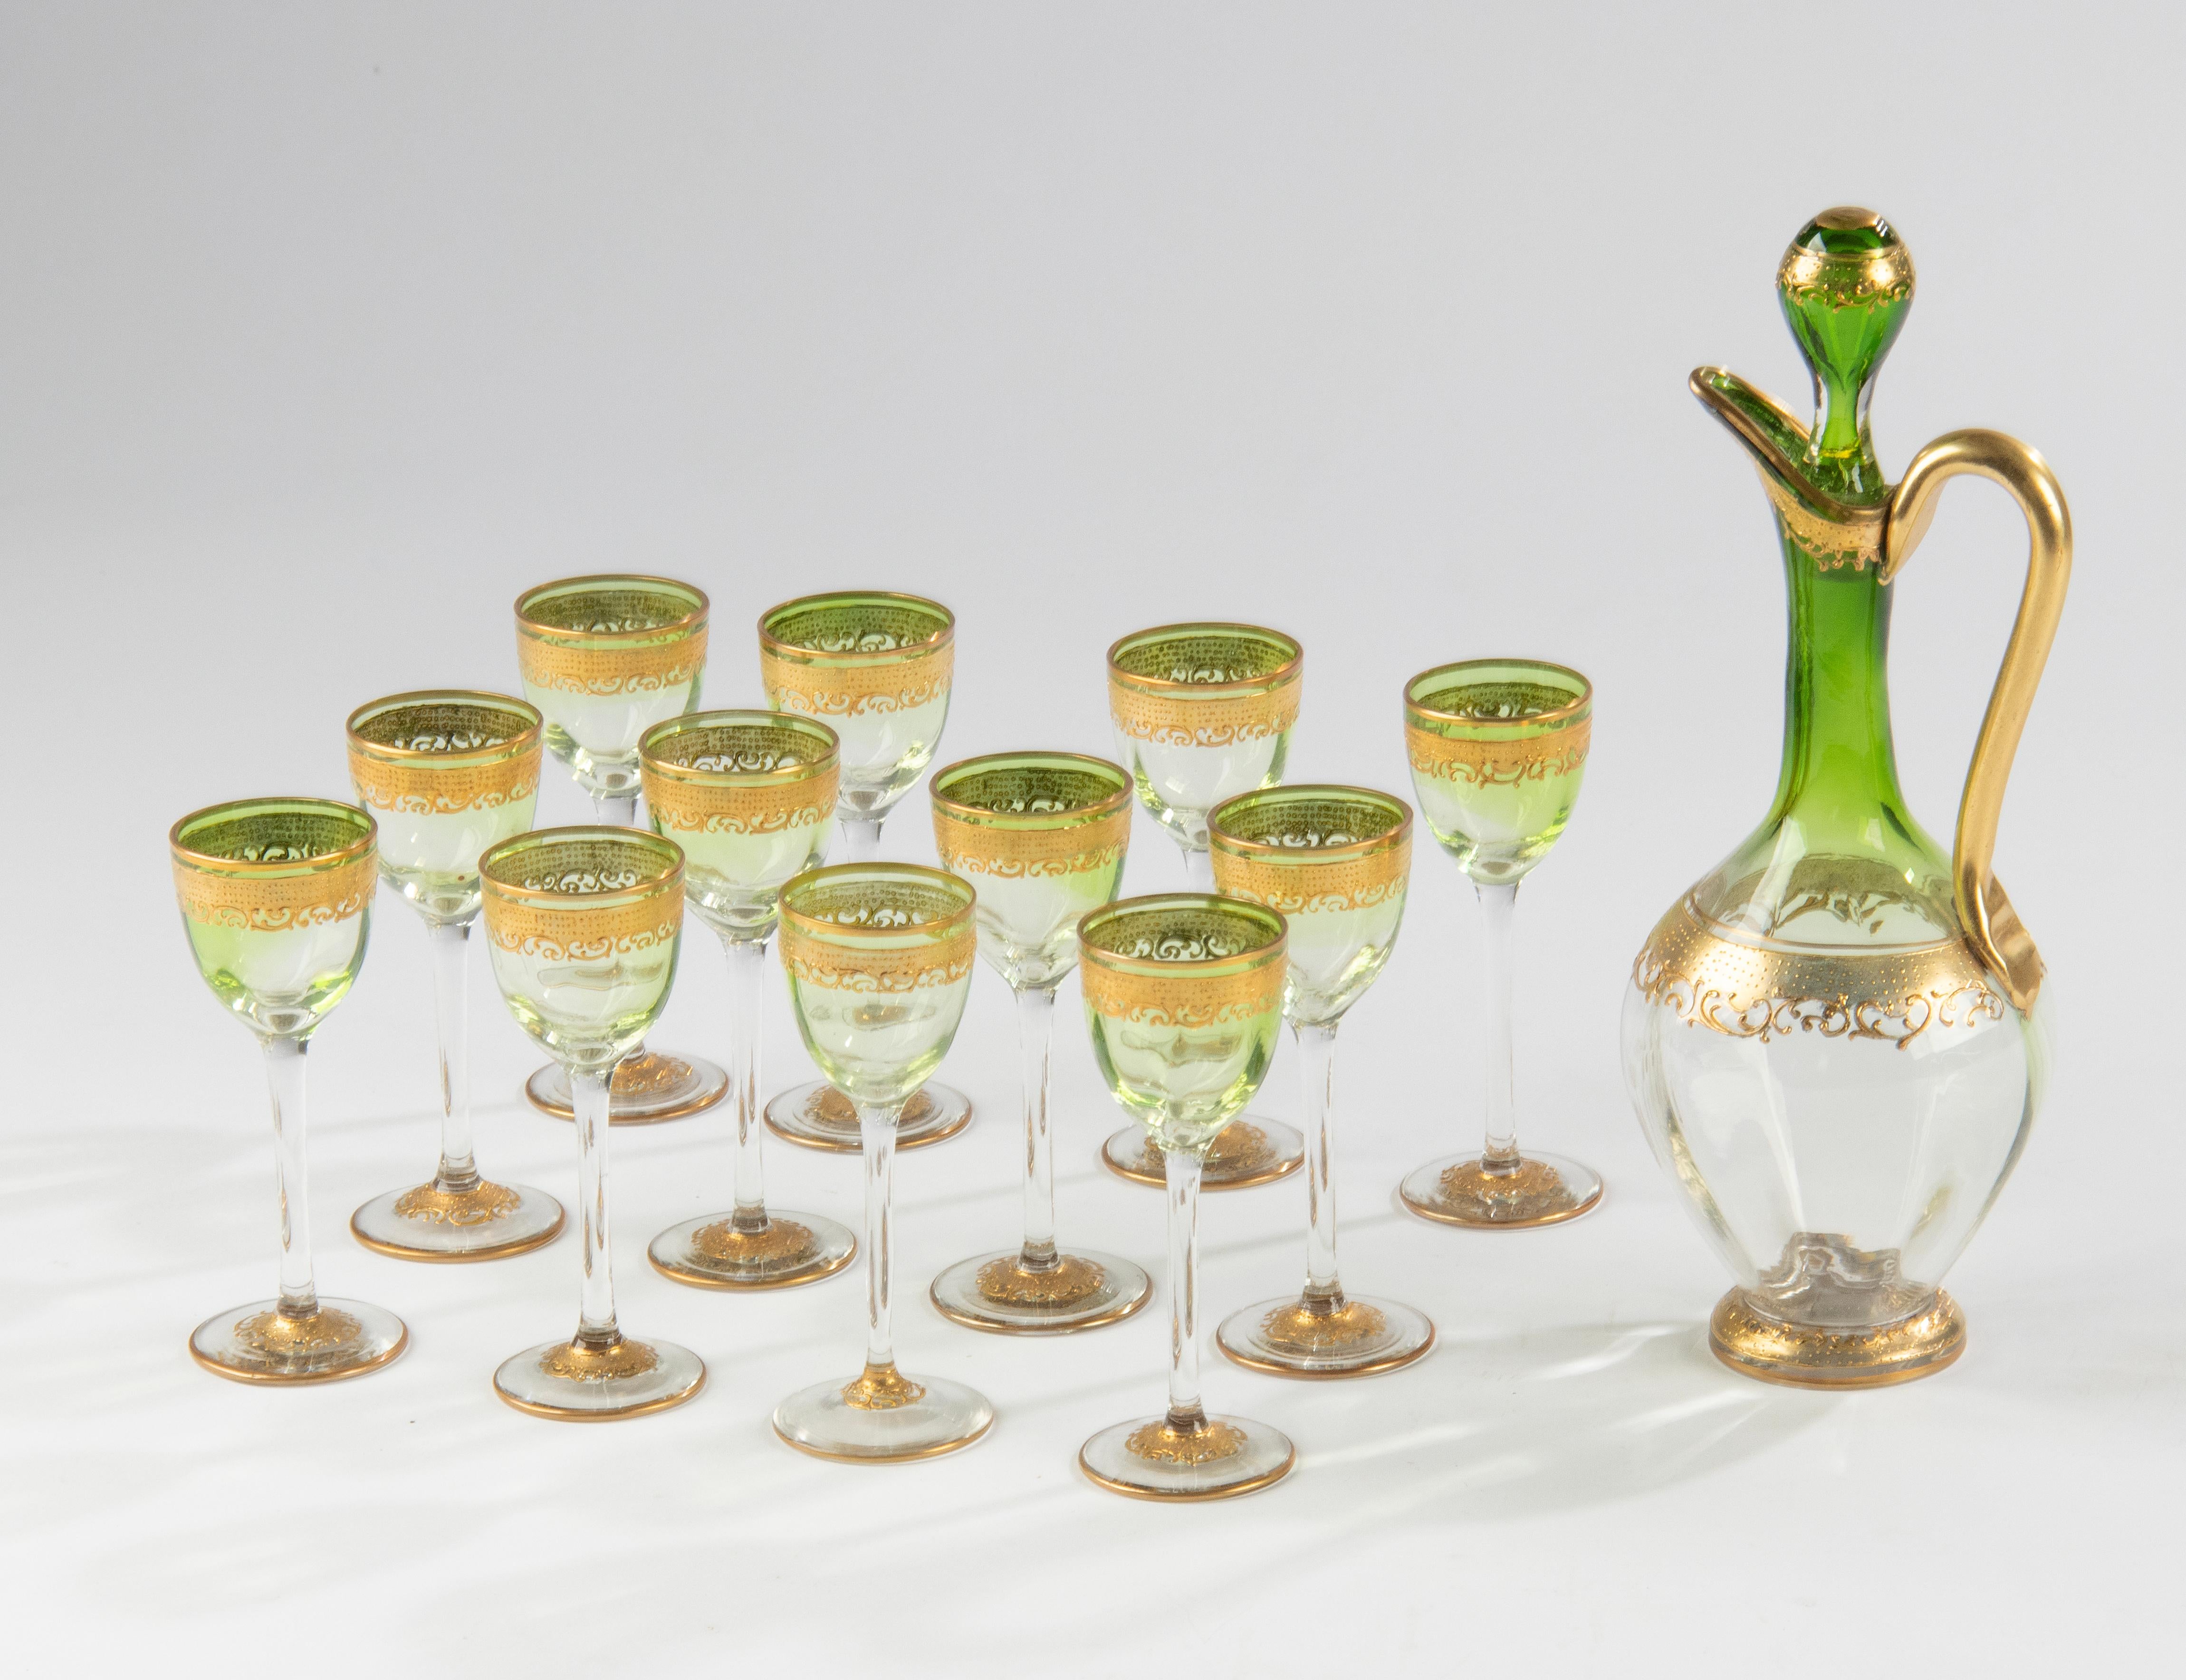 Ein wunderschönes Likörset aus Kristall, hergestellt von der berühmten Marke Moser Karlsbad. 
Die Gläser haben einen schönen grünen Farbverlauf und goldfarbene Akzente. Die passende Karaffe macht dieses Set zu etwas ganz Besonderem. 
Abmessungen: